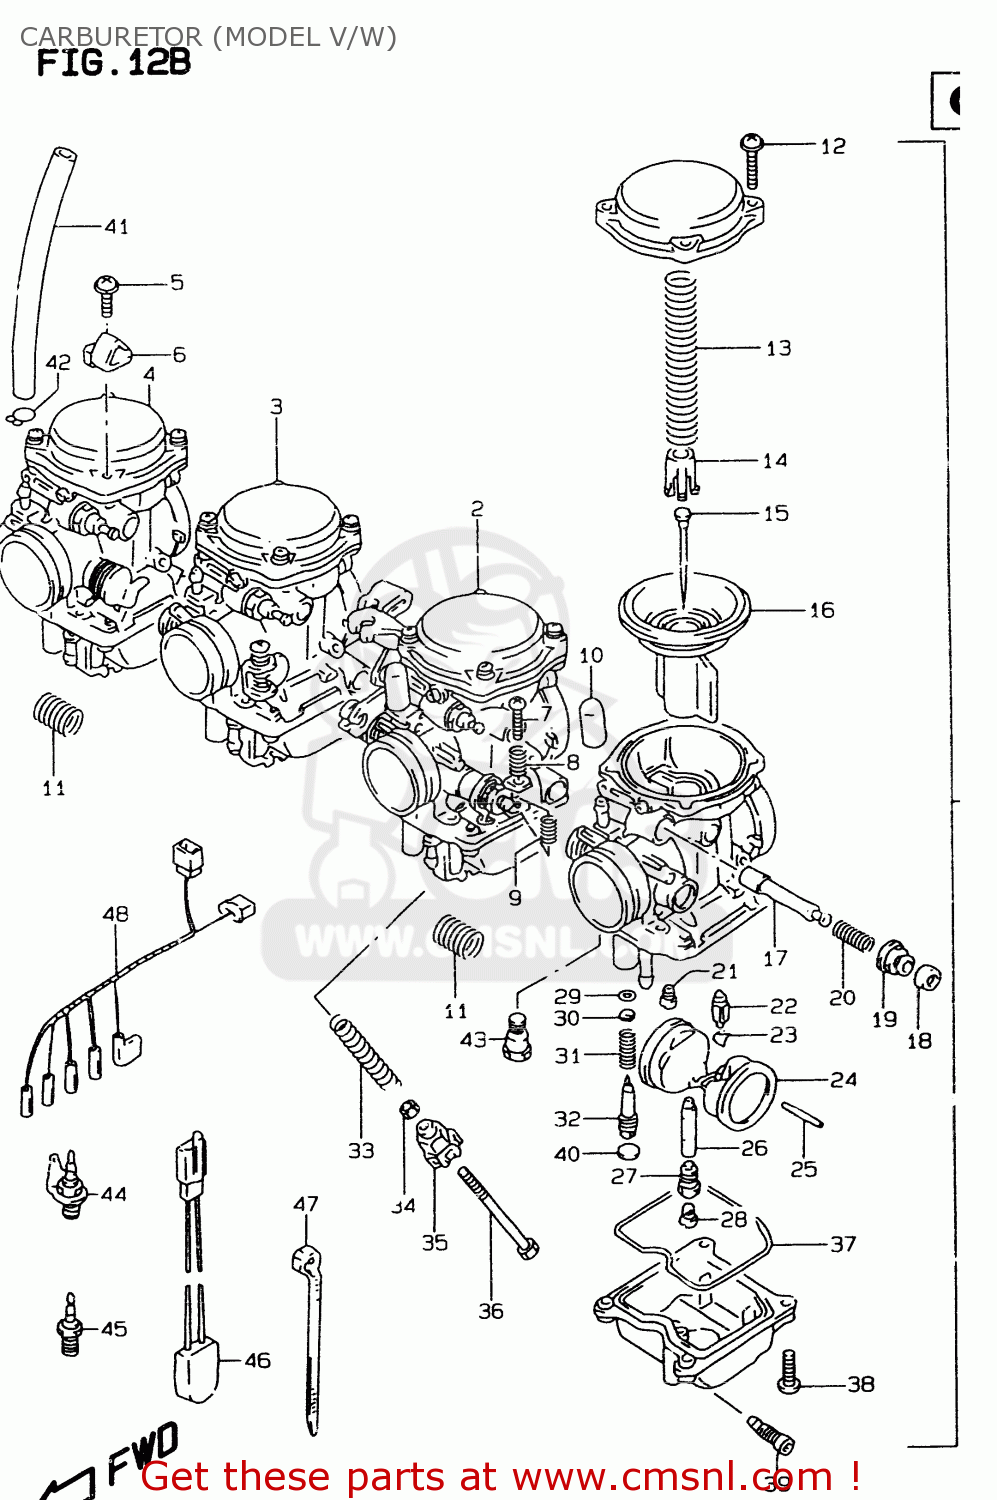 suzuki-gsf600-1997-suv-carburetor-model-